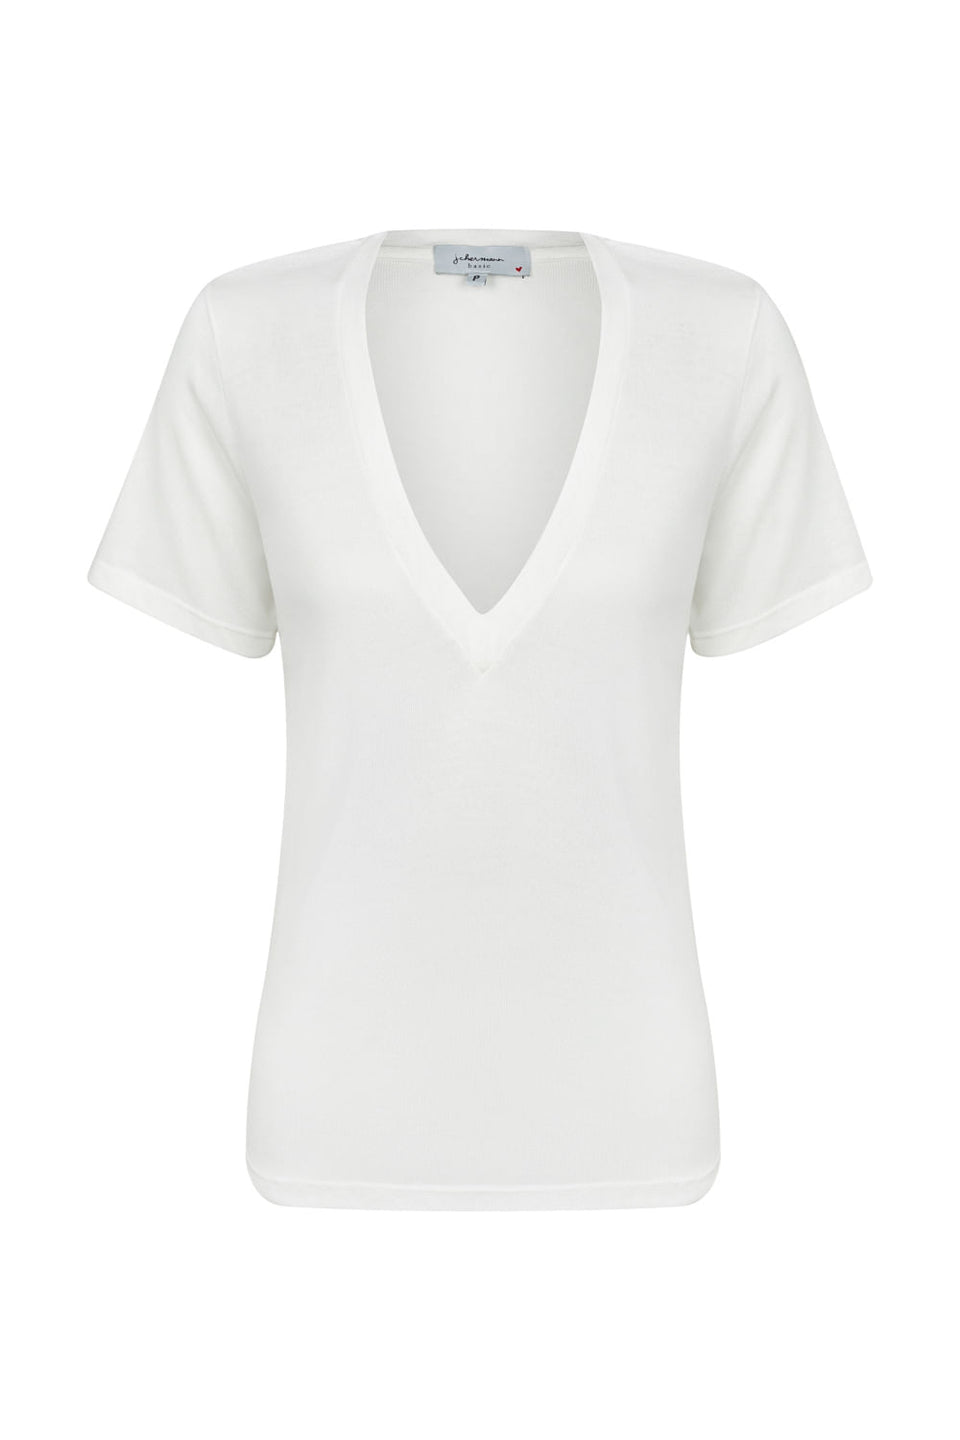 Camiseta Maxi Decote Branco